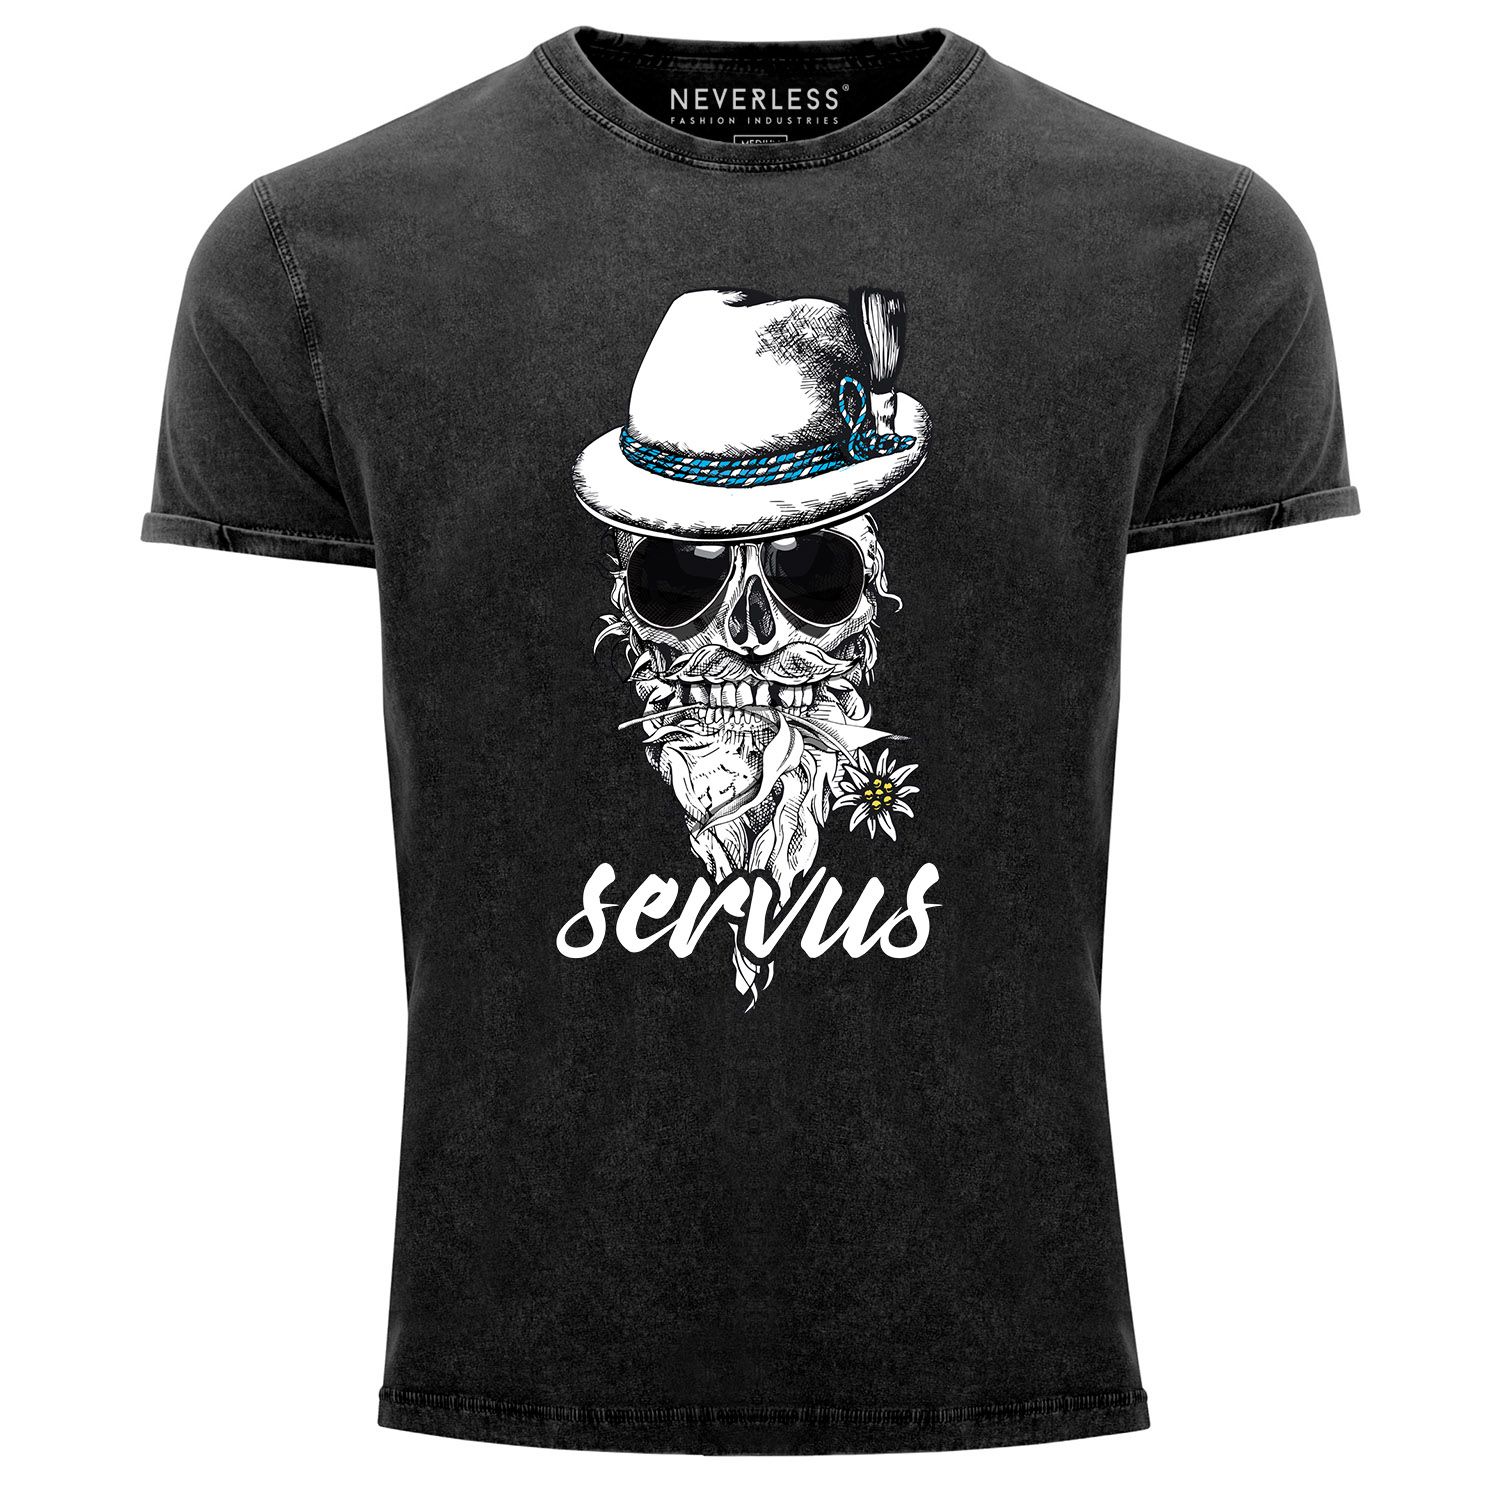 Cooles, lustiges Angesagtes Herren T-Shirt Vintage Shirt Servus Skull Totenkopf Aufdruck Used Look Slim Fit Neverless®